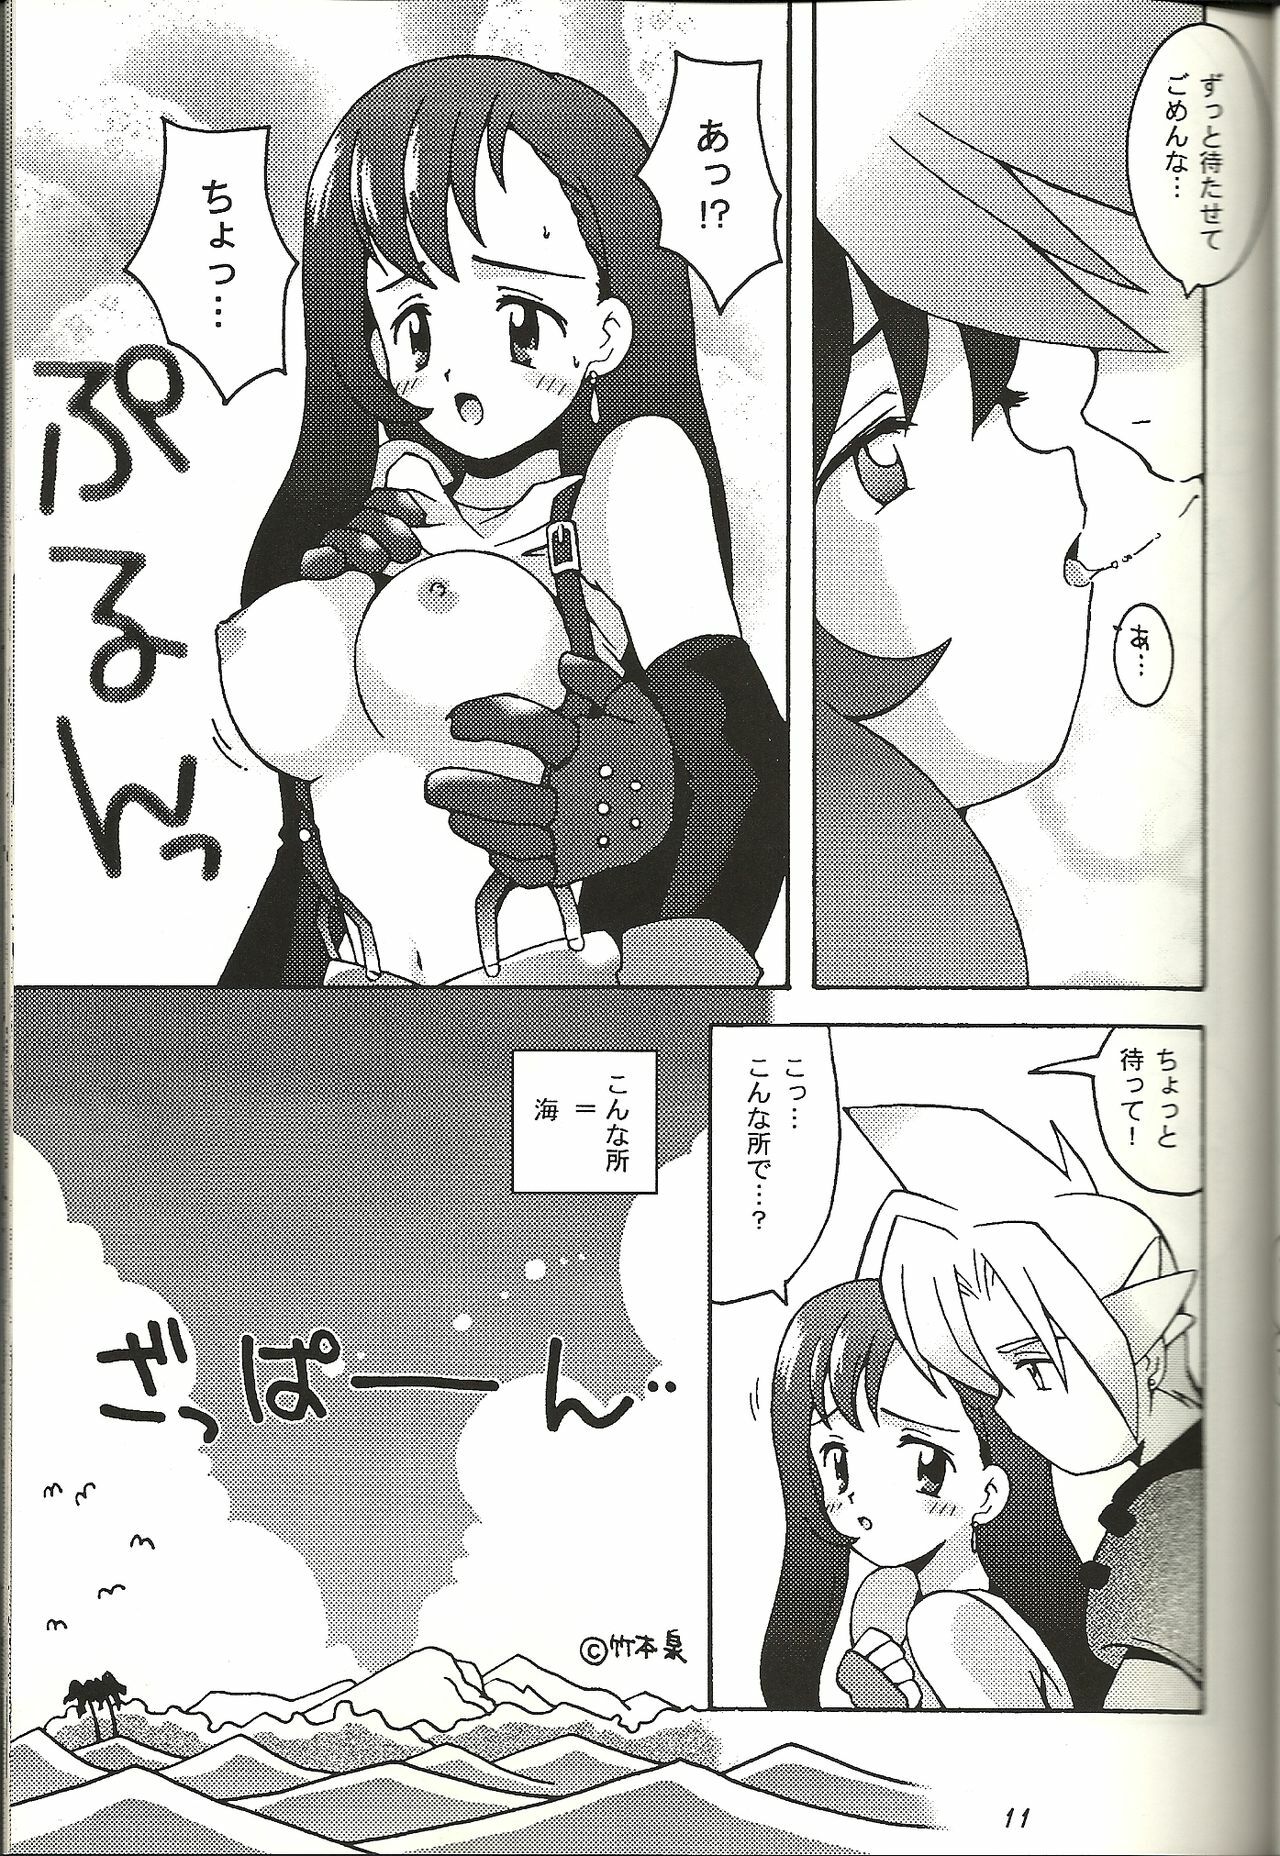 (CR21) [Bakuhatsu BRS. (B.Tarou)] Renai Shiyou (Final Fantasy VII) page 10 full